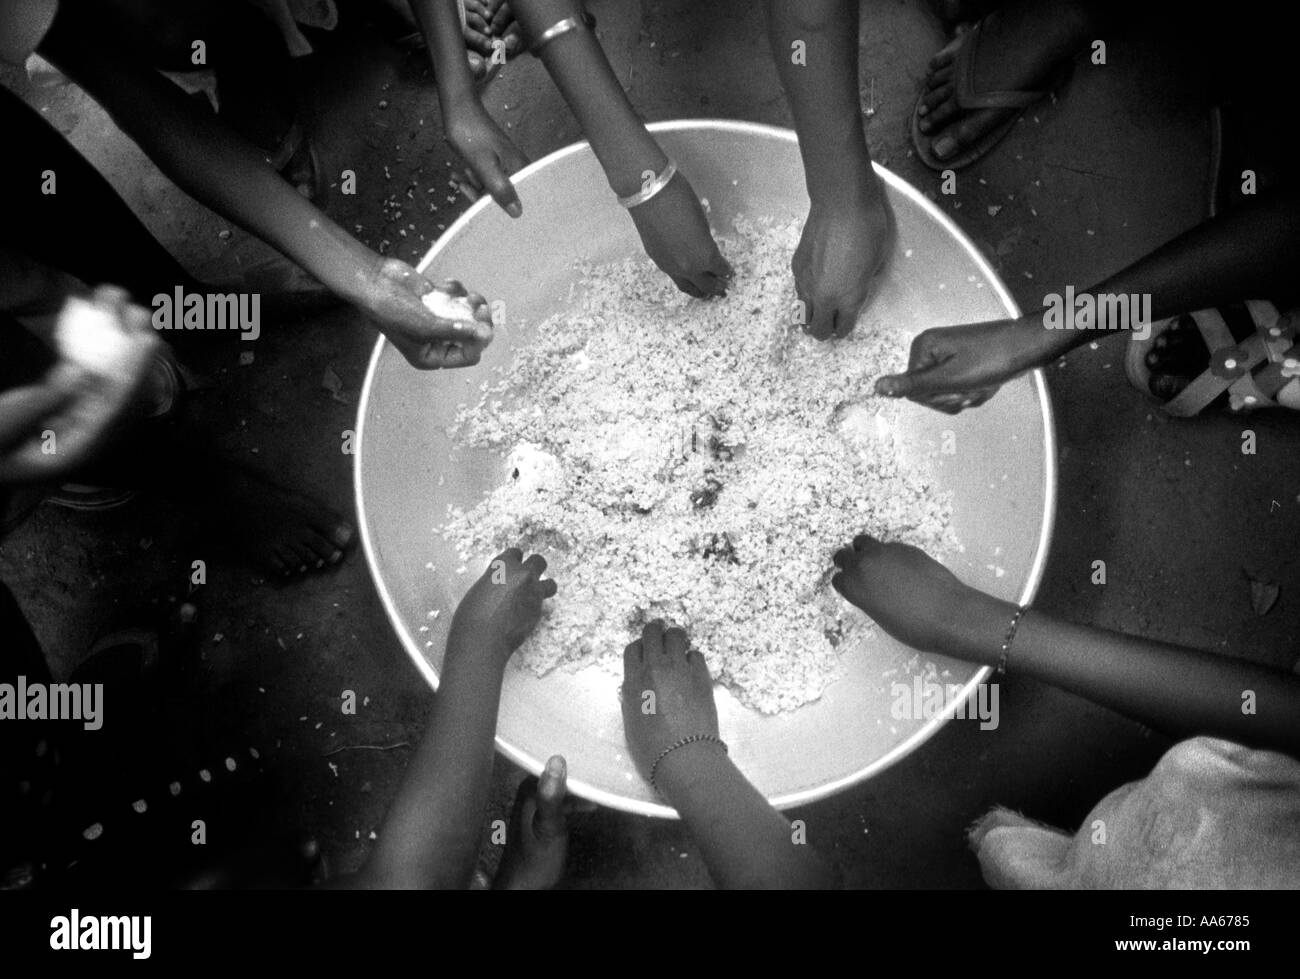 Kinder essen Reis zusammen, die vor Ort ist, in Westafrika asiatischen Reis, die verkaufen geerntet worden für weniger als lokale Reis ist Stockfoto